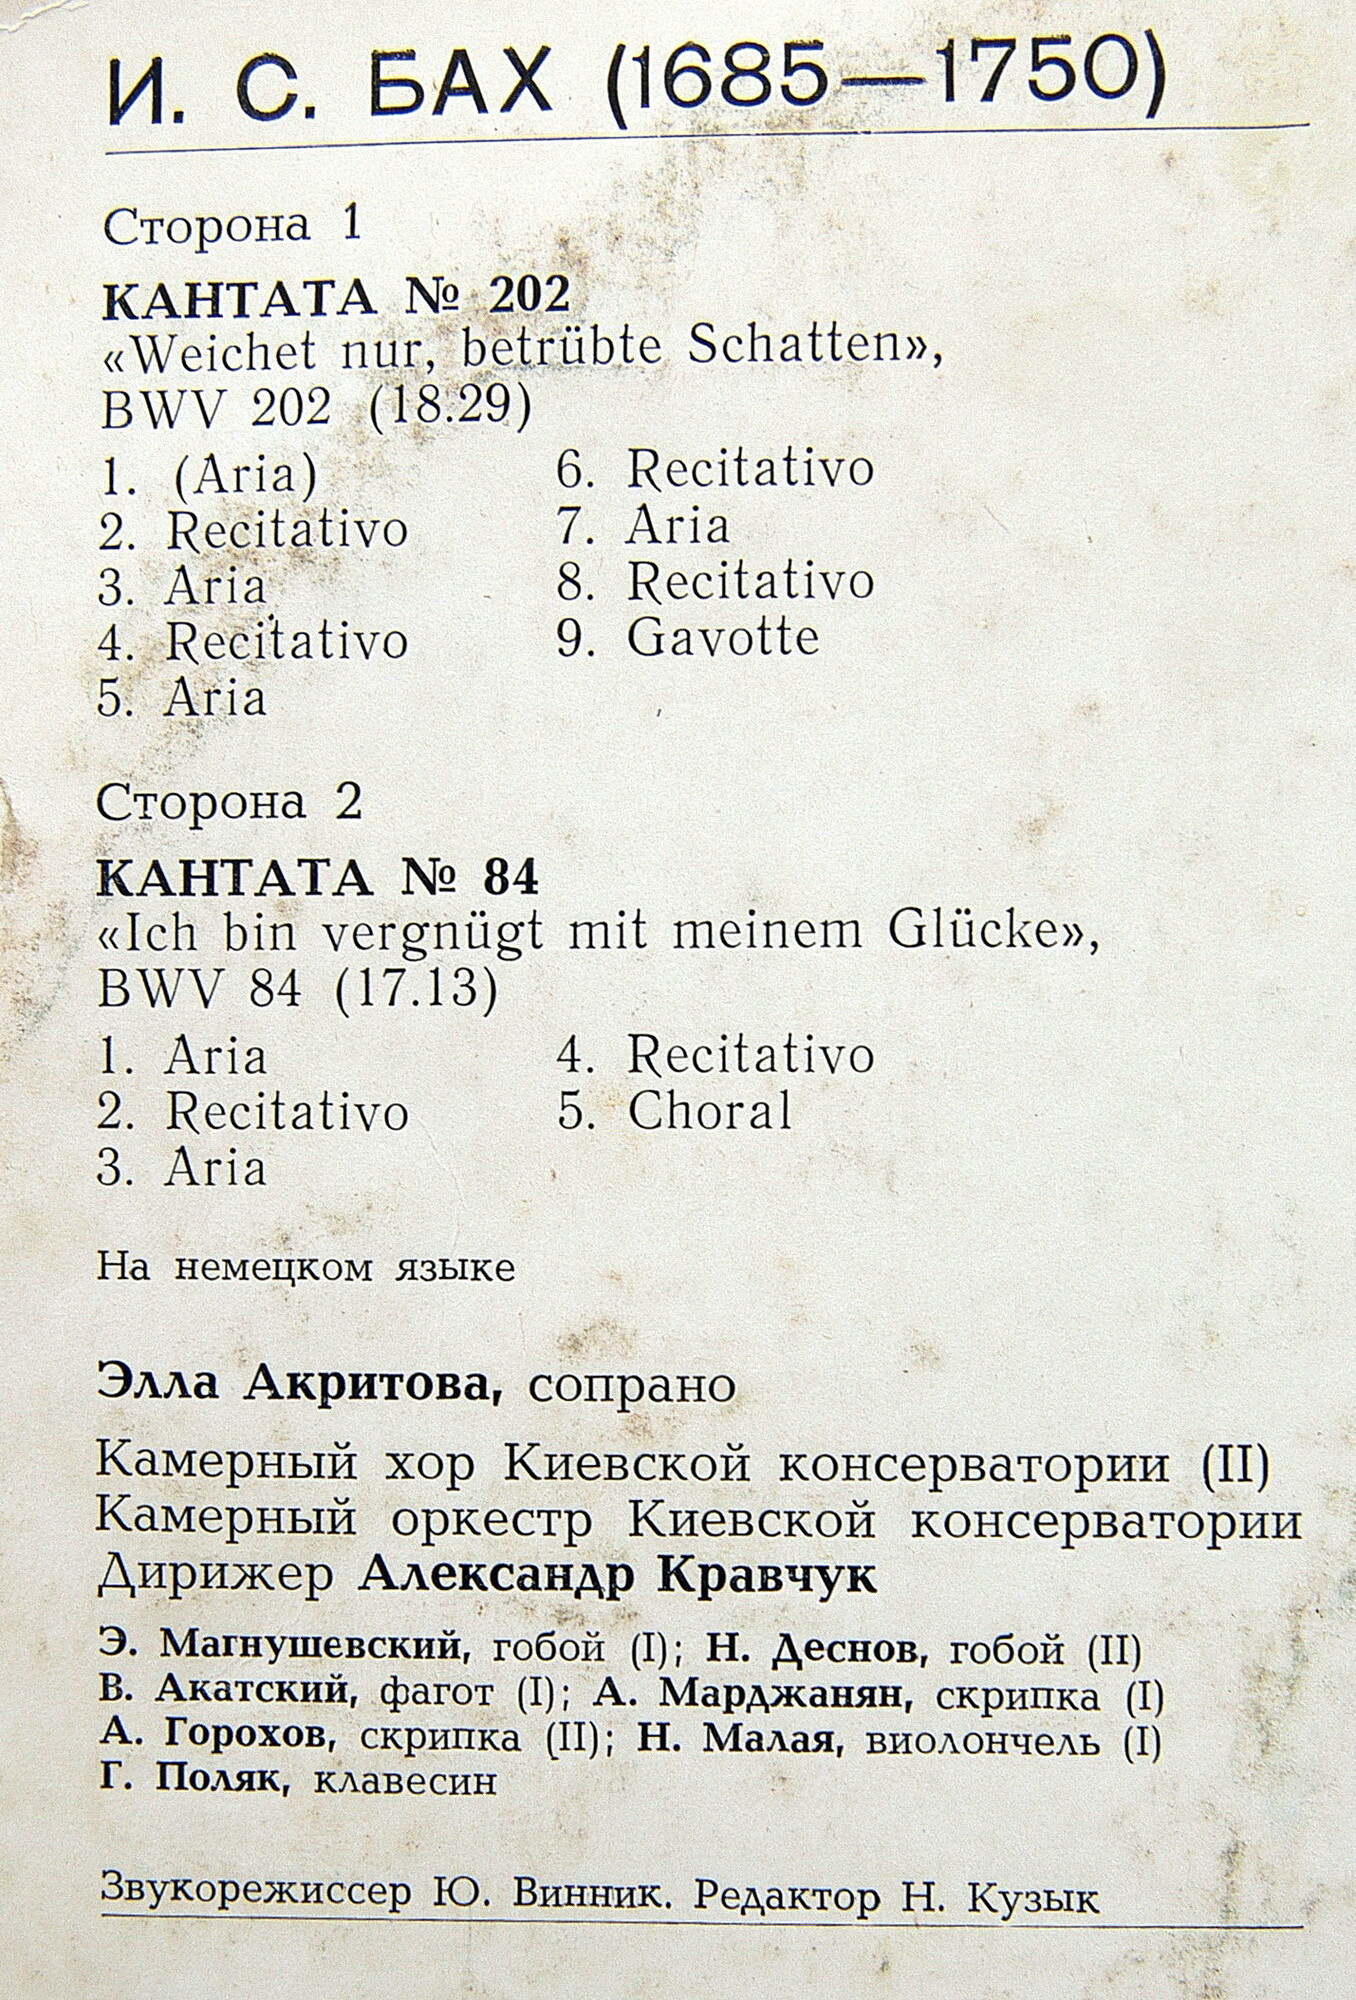 И. С. БАХ (1685-1750): Кантаты № 202 и 84